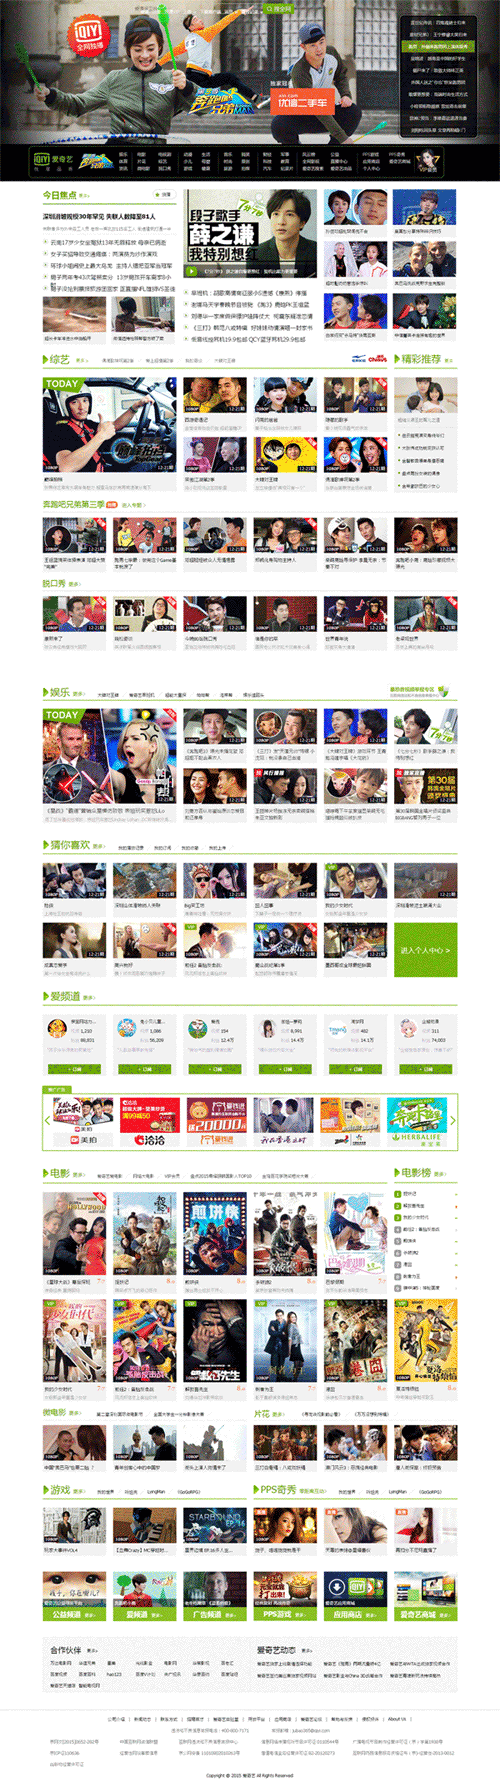 绿色风格的仿爱奇艺官网影视网站模板下载